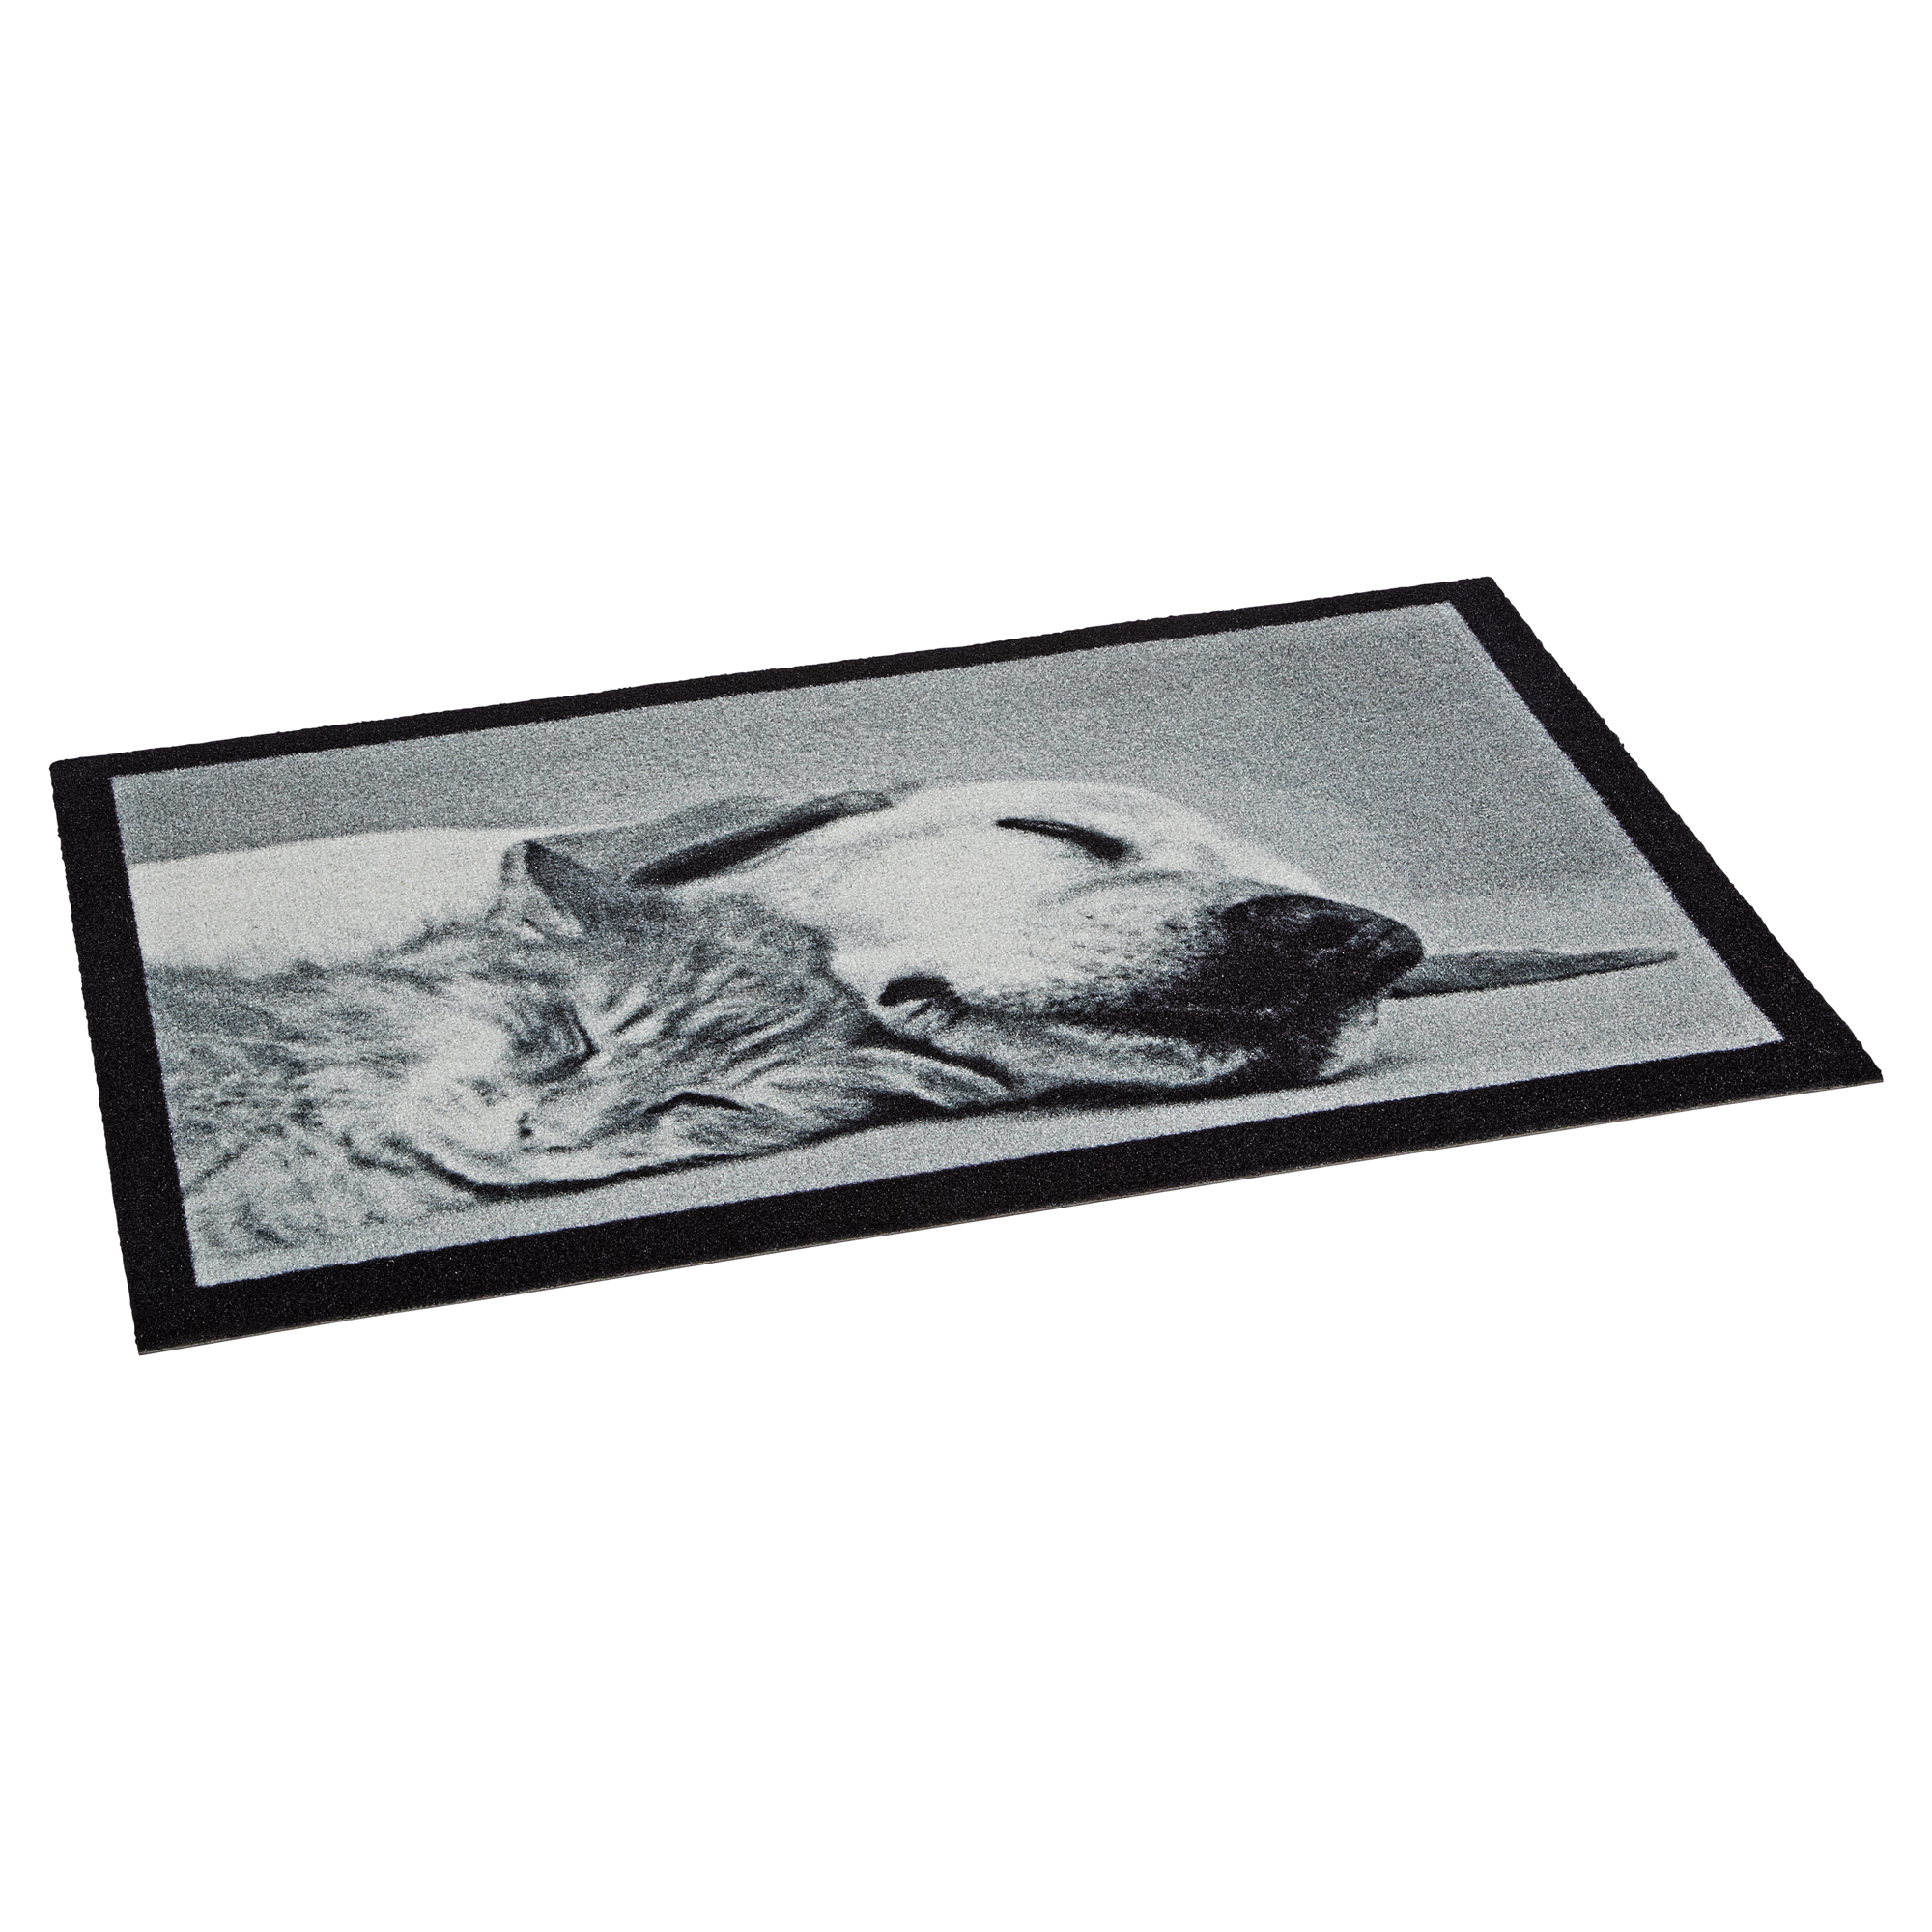 Sauberlaufmatte 'schlafender Hund' 58 x 39 cm + product picture